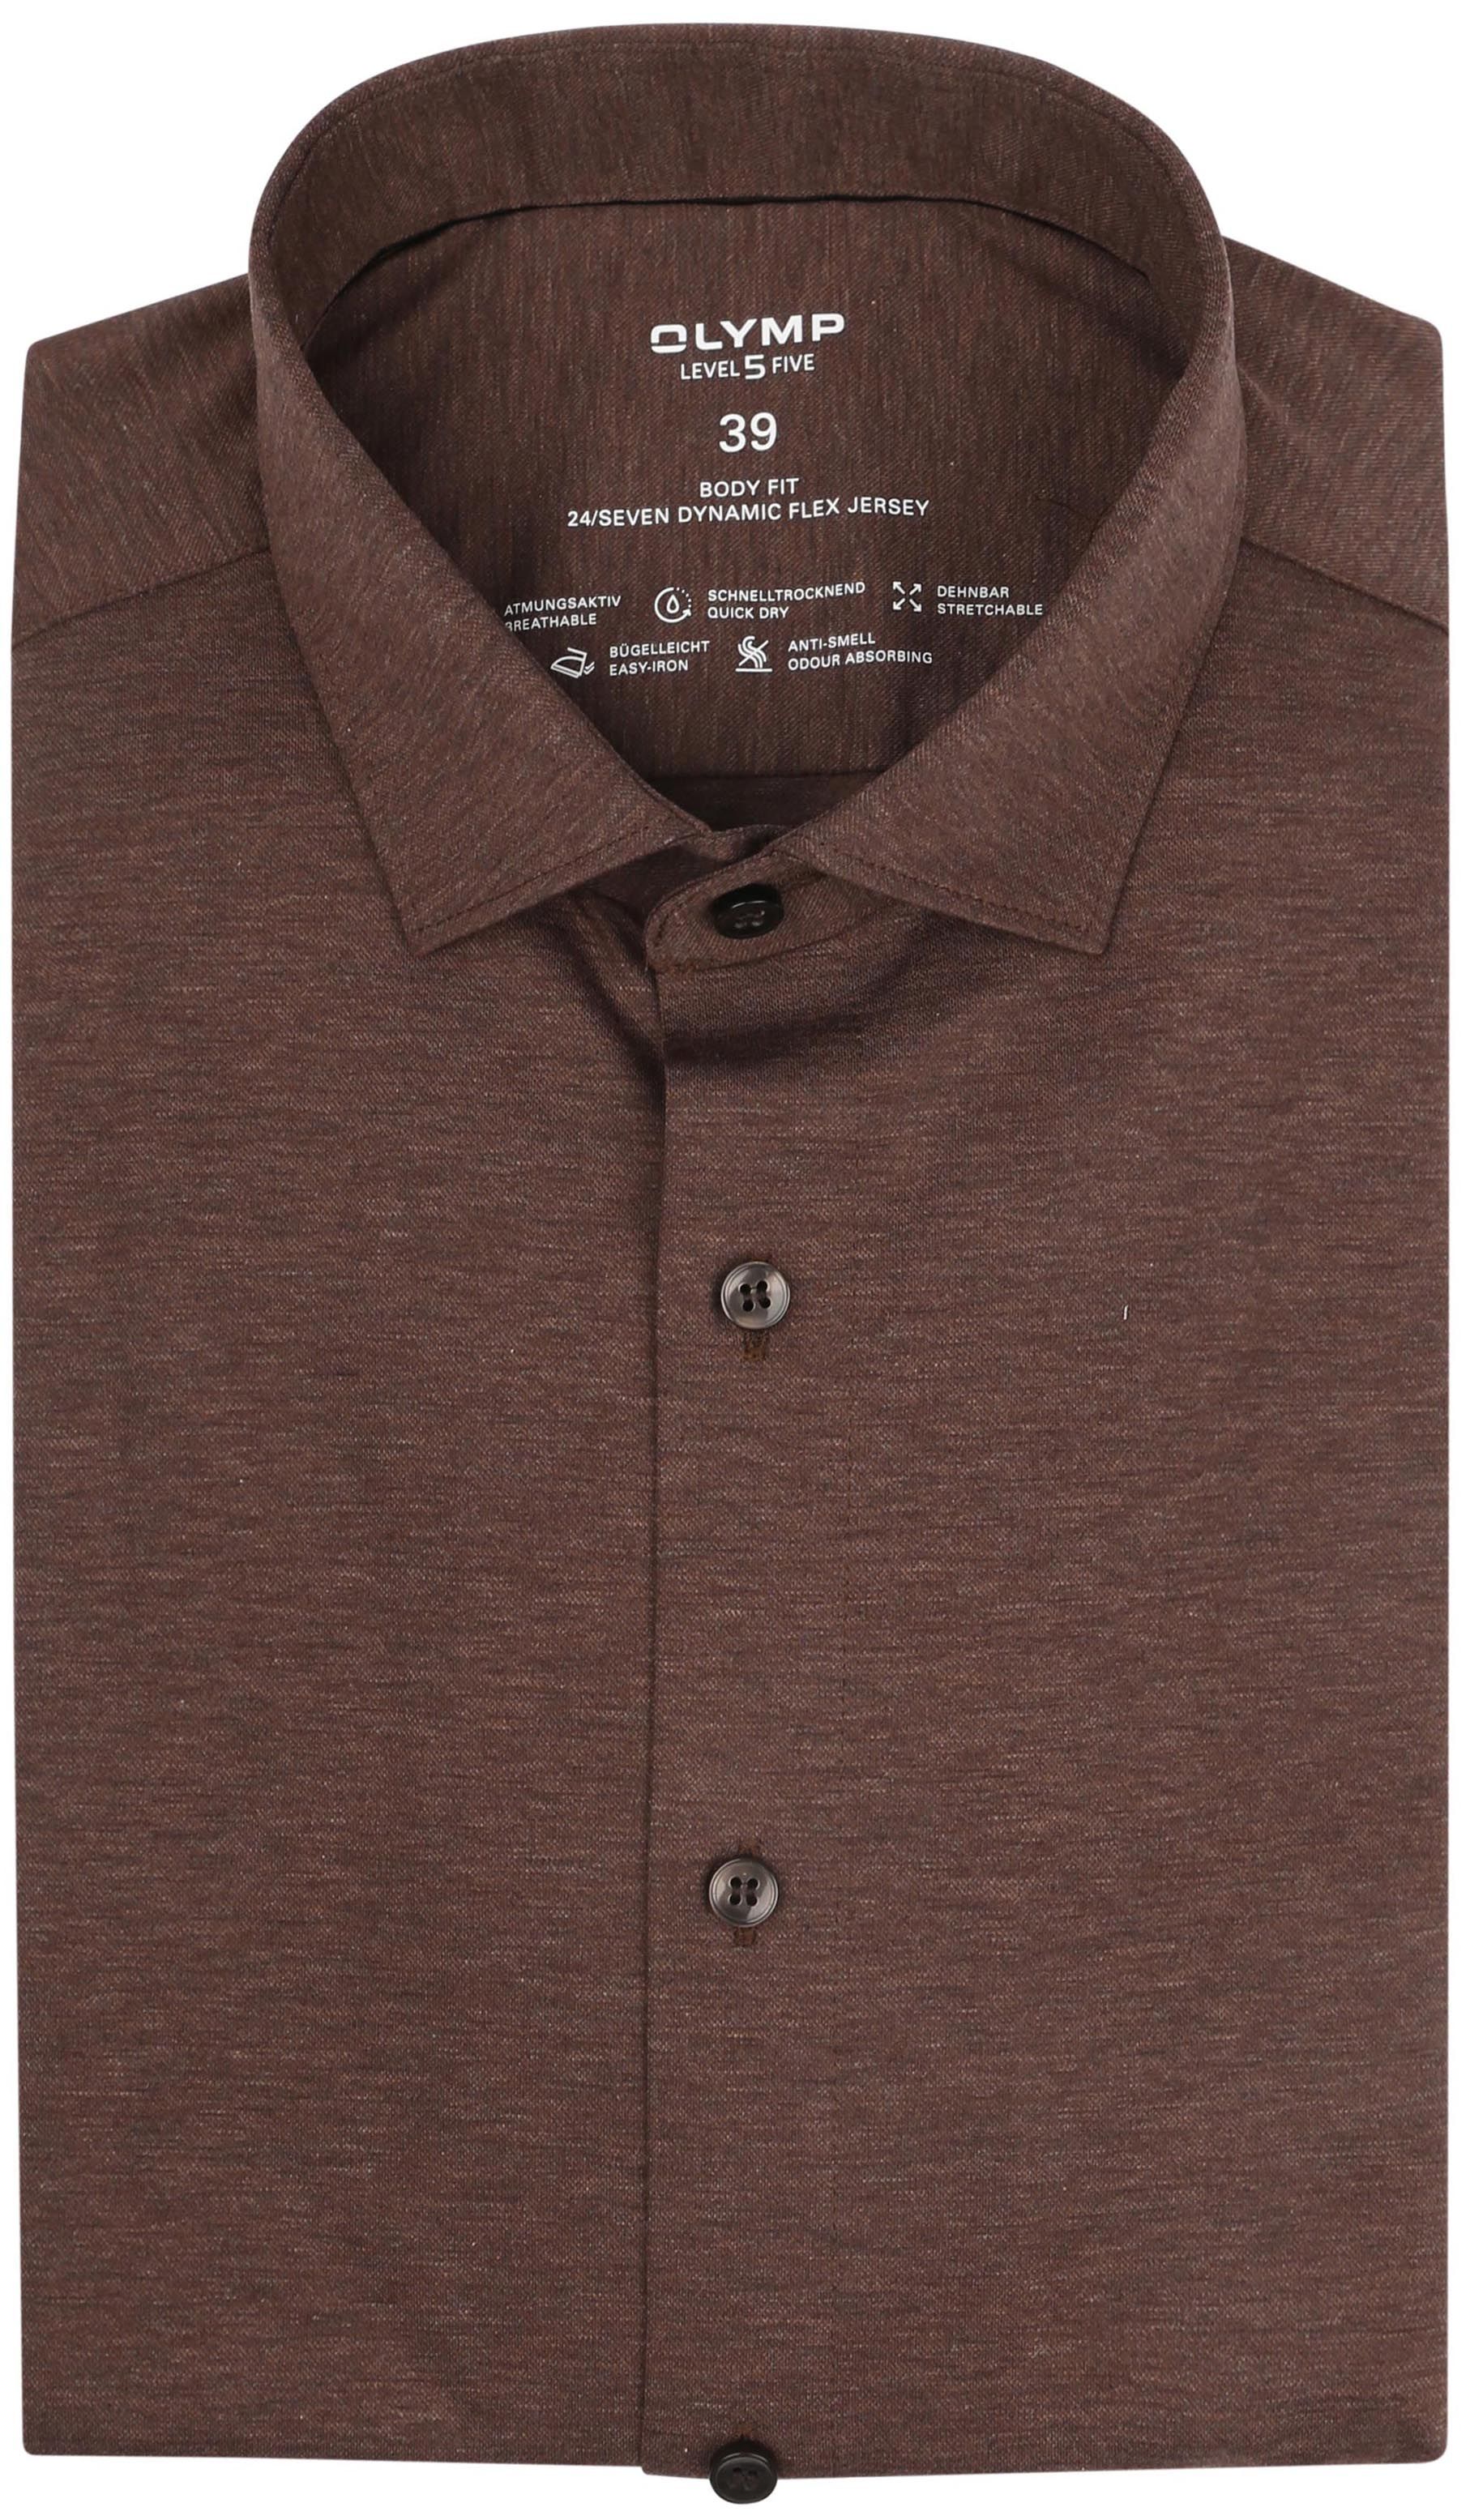 OLYMP Shirt Level 5 24/Seven Melange Brown size 45